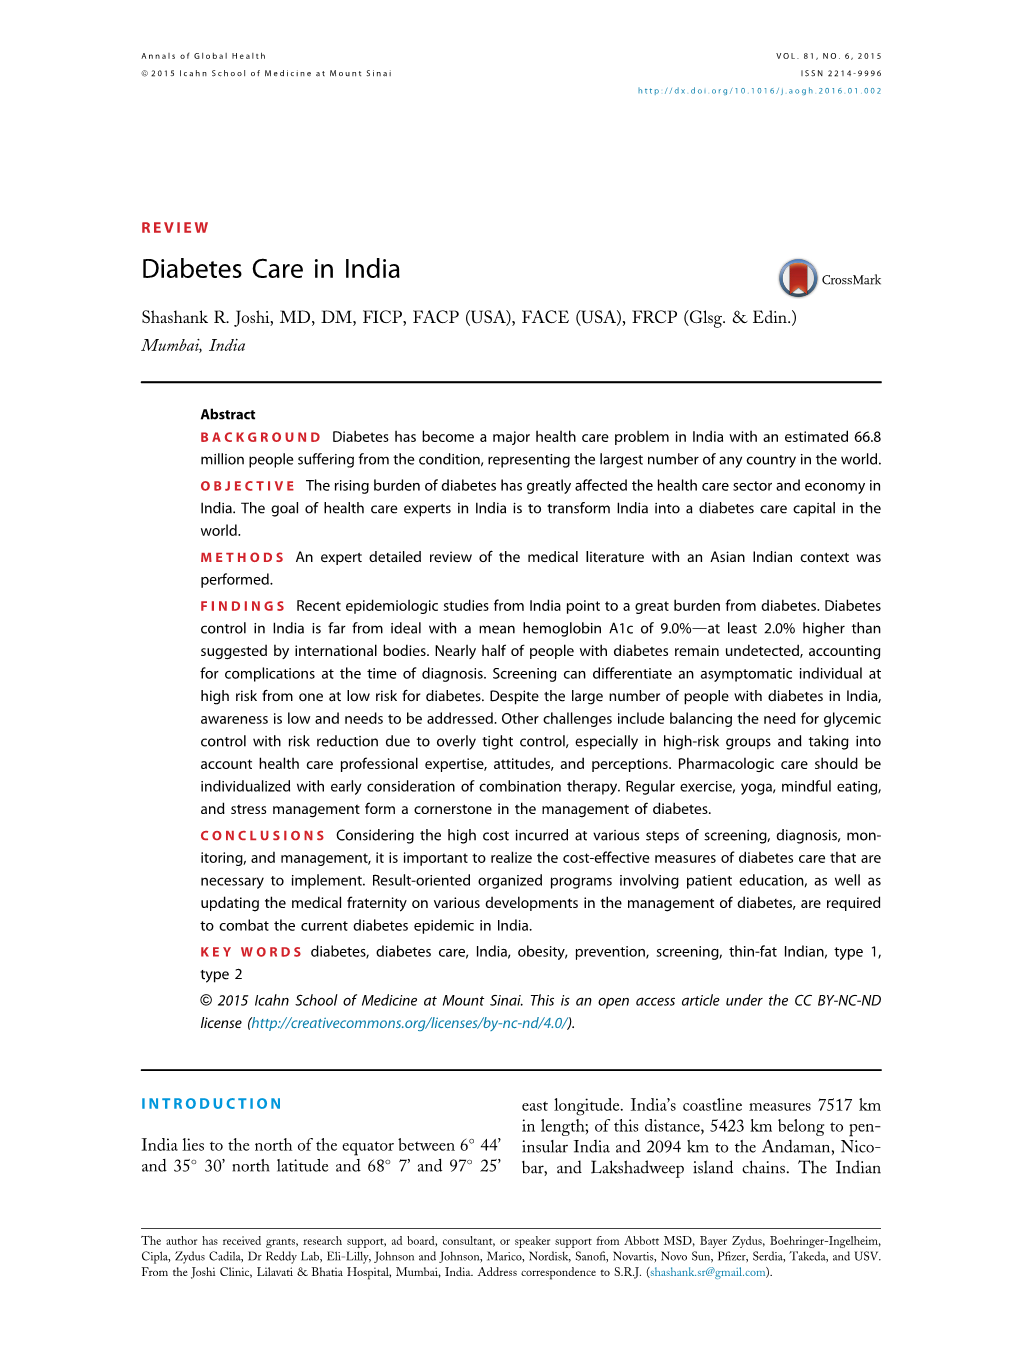 Diabetes Care in India